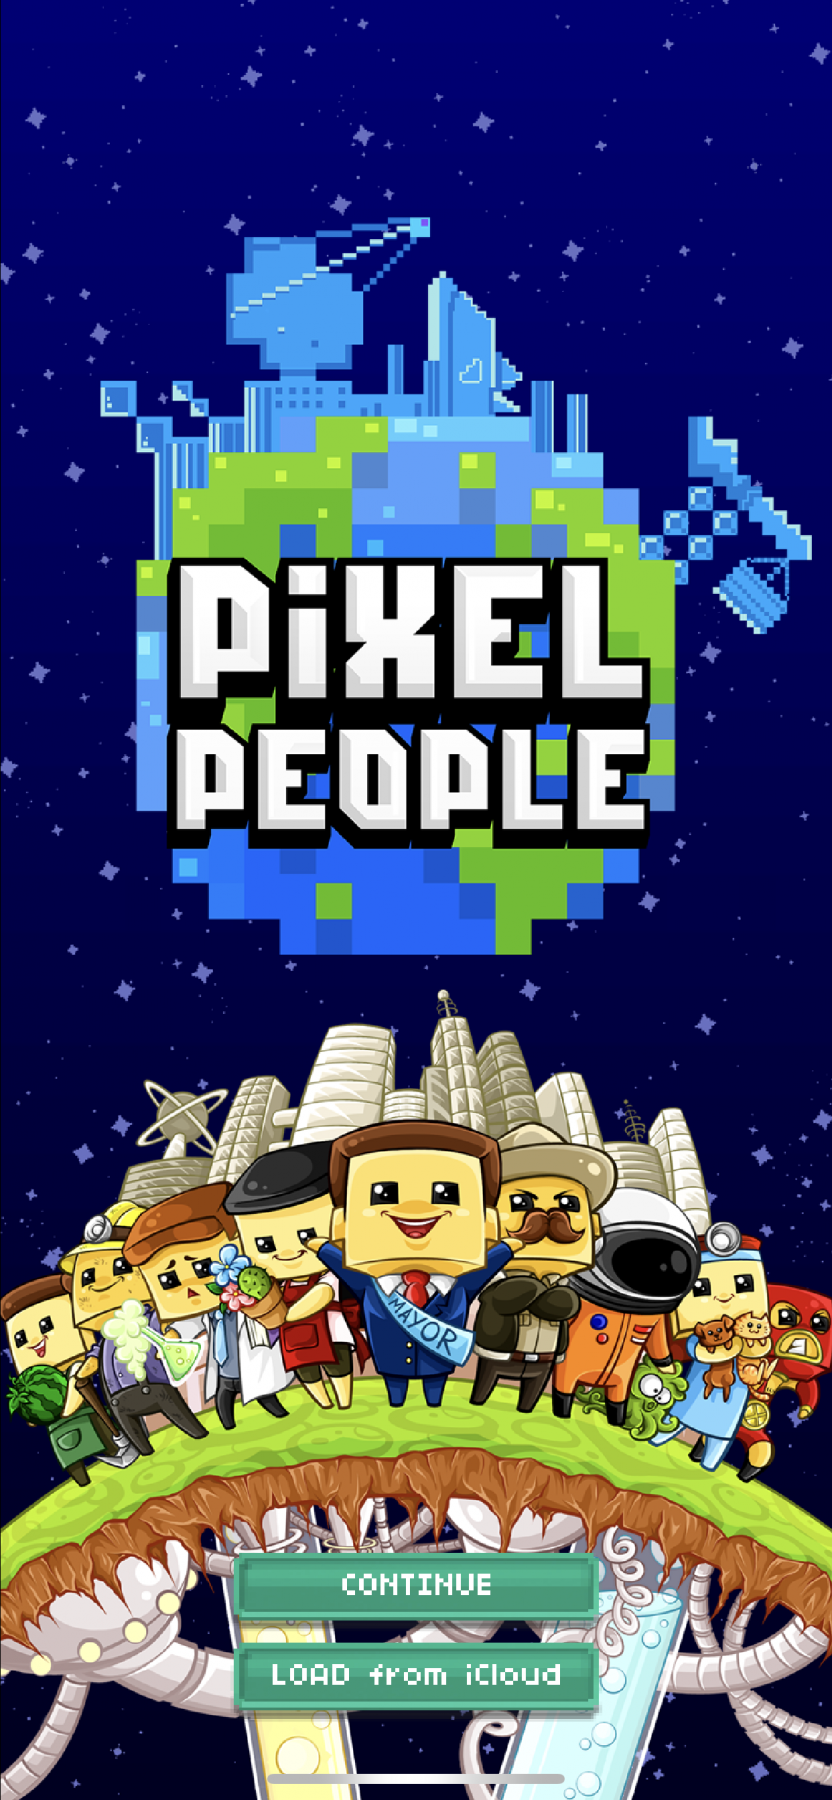 games like pixel people